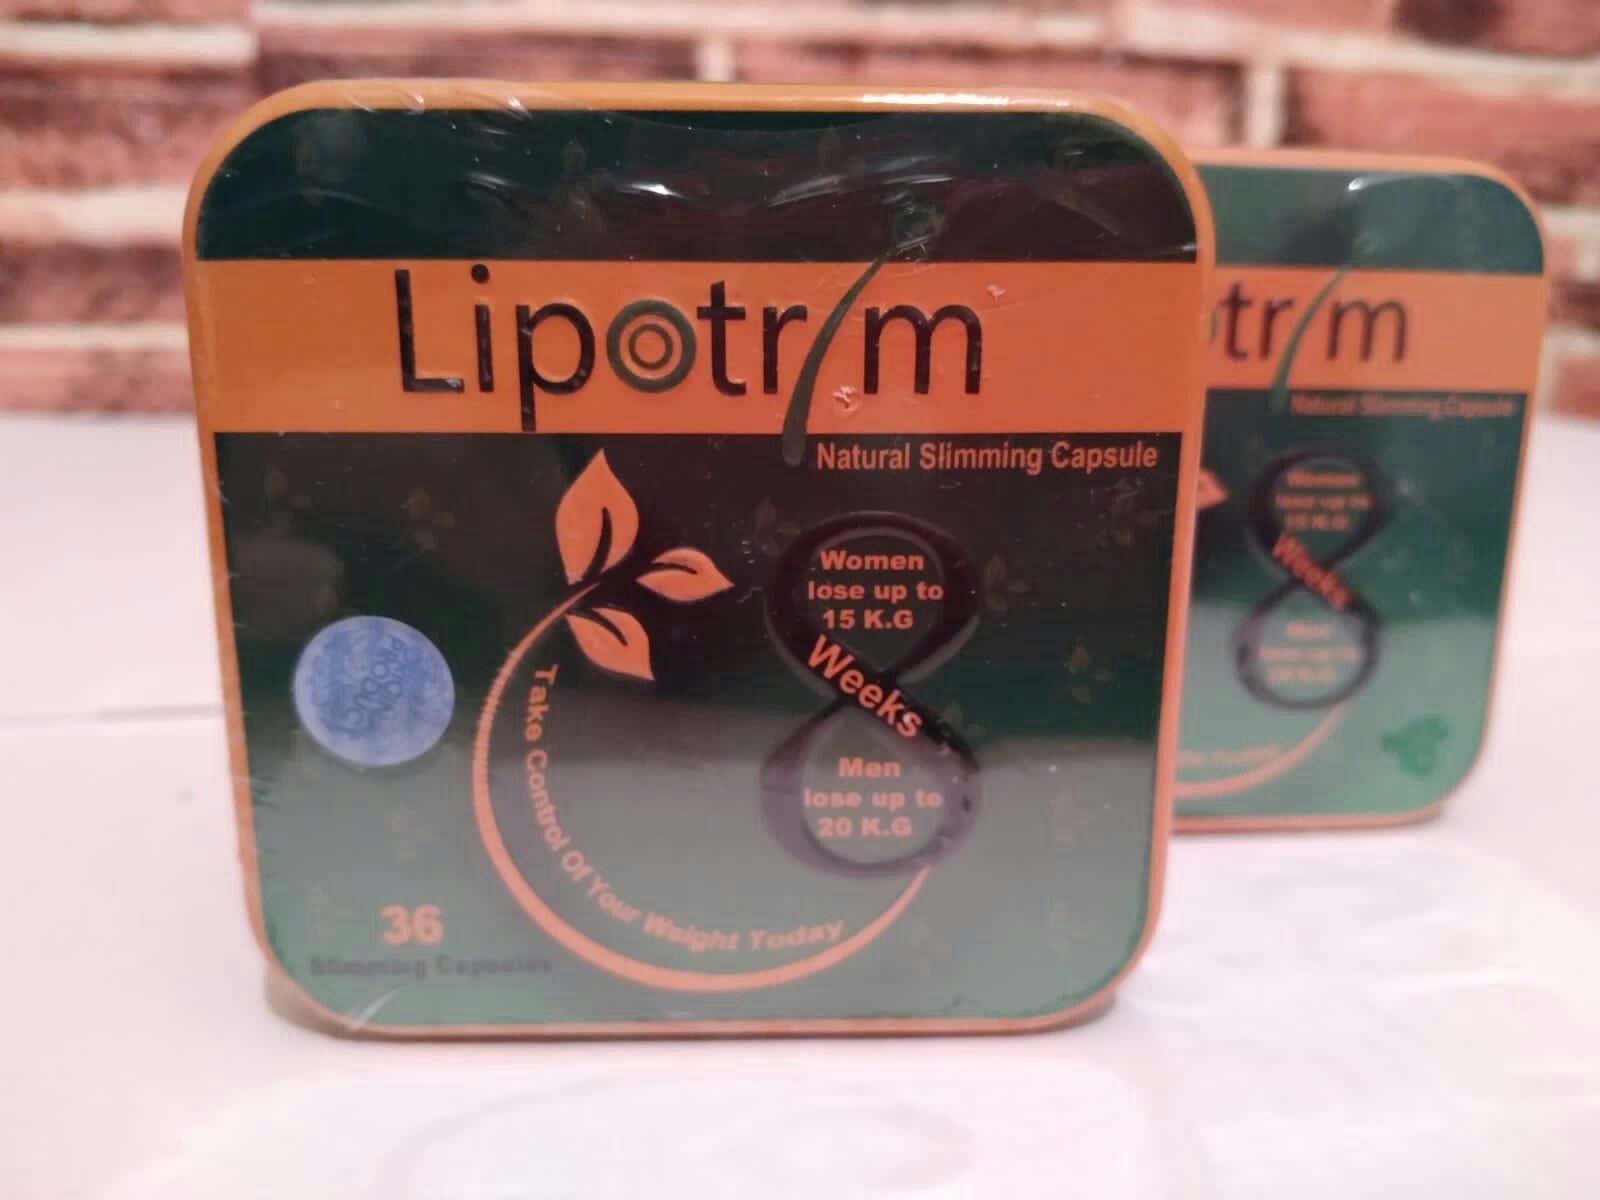 Lipotrim хит продаж. Бад для красоты и здоровья.